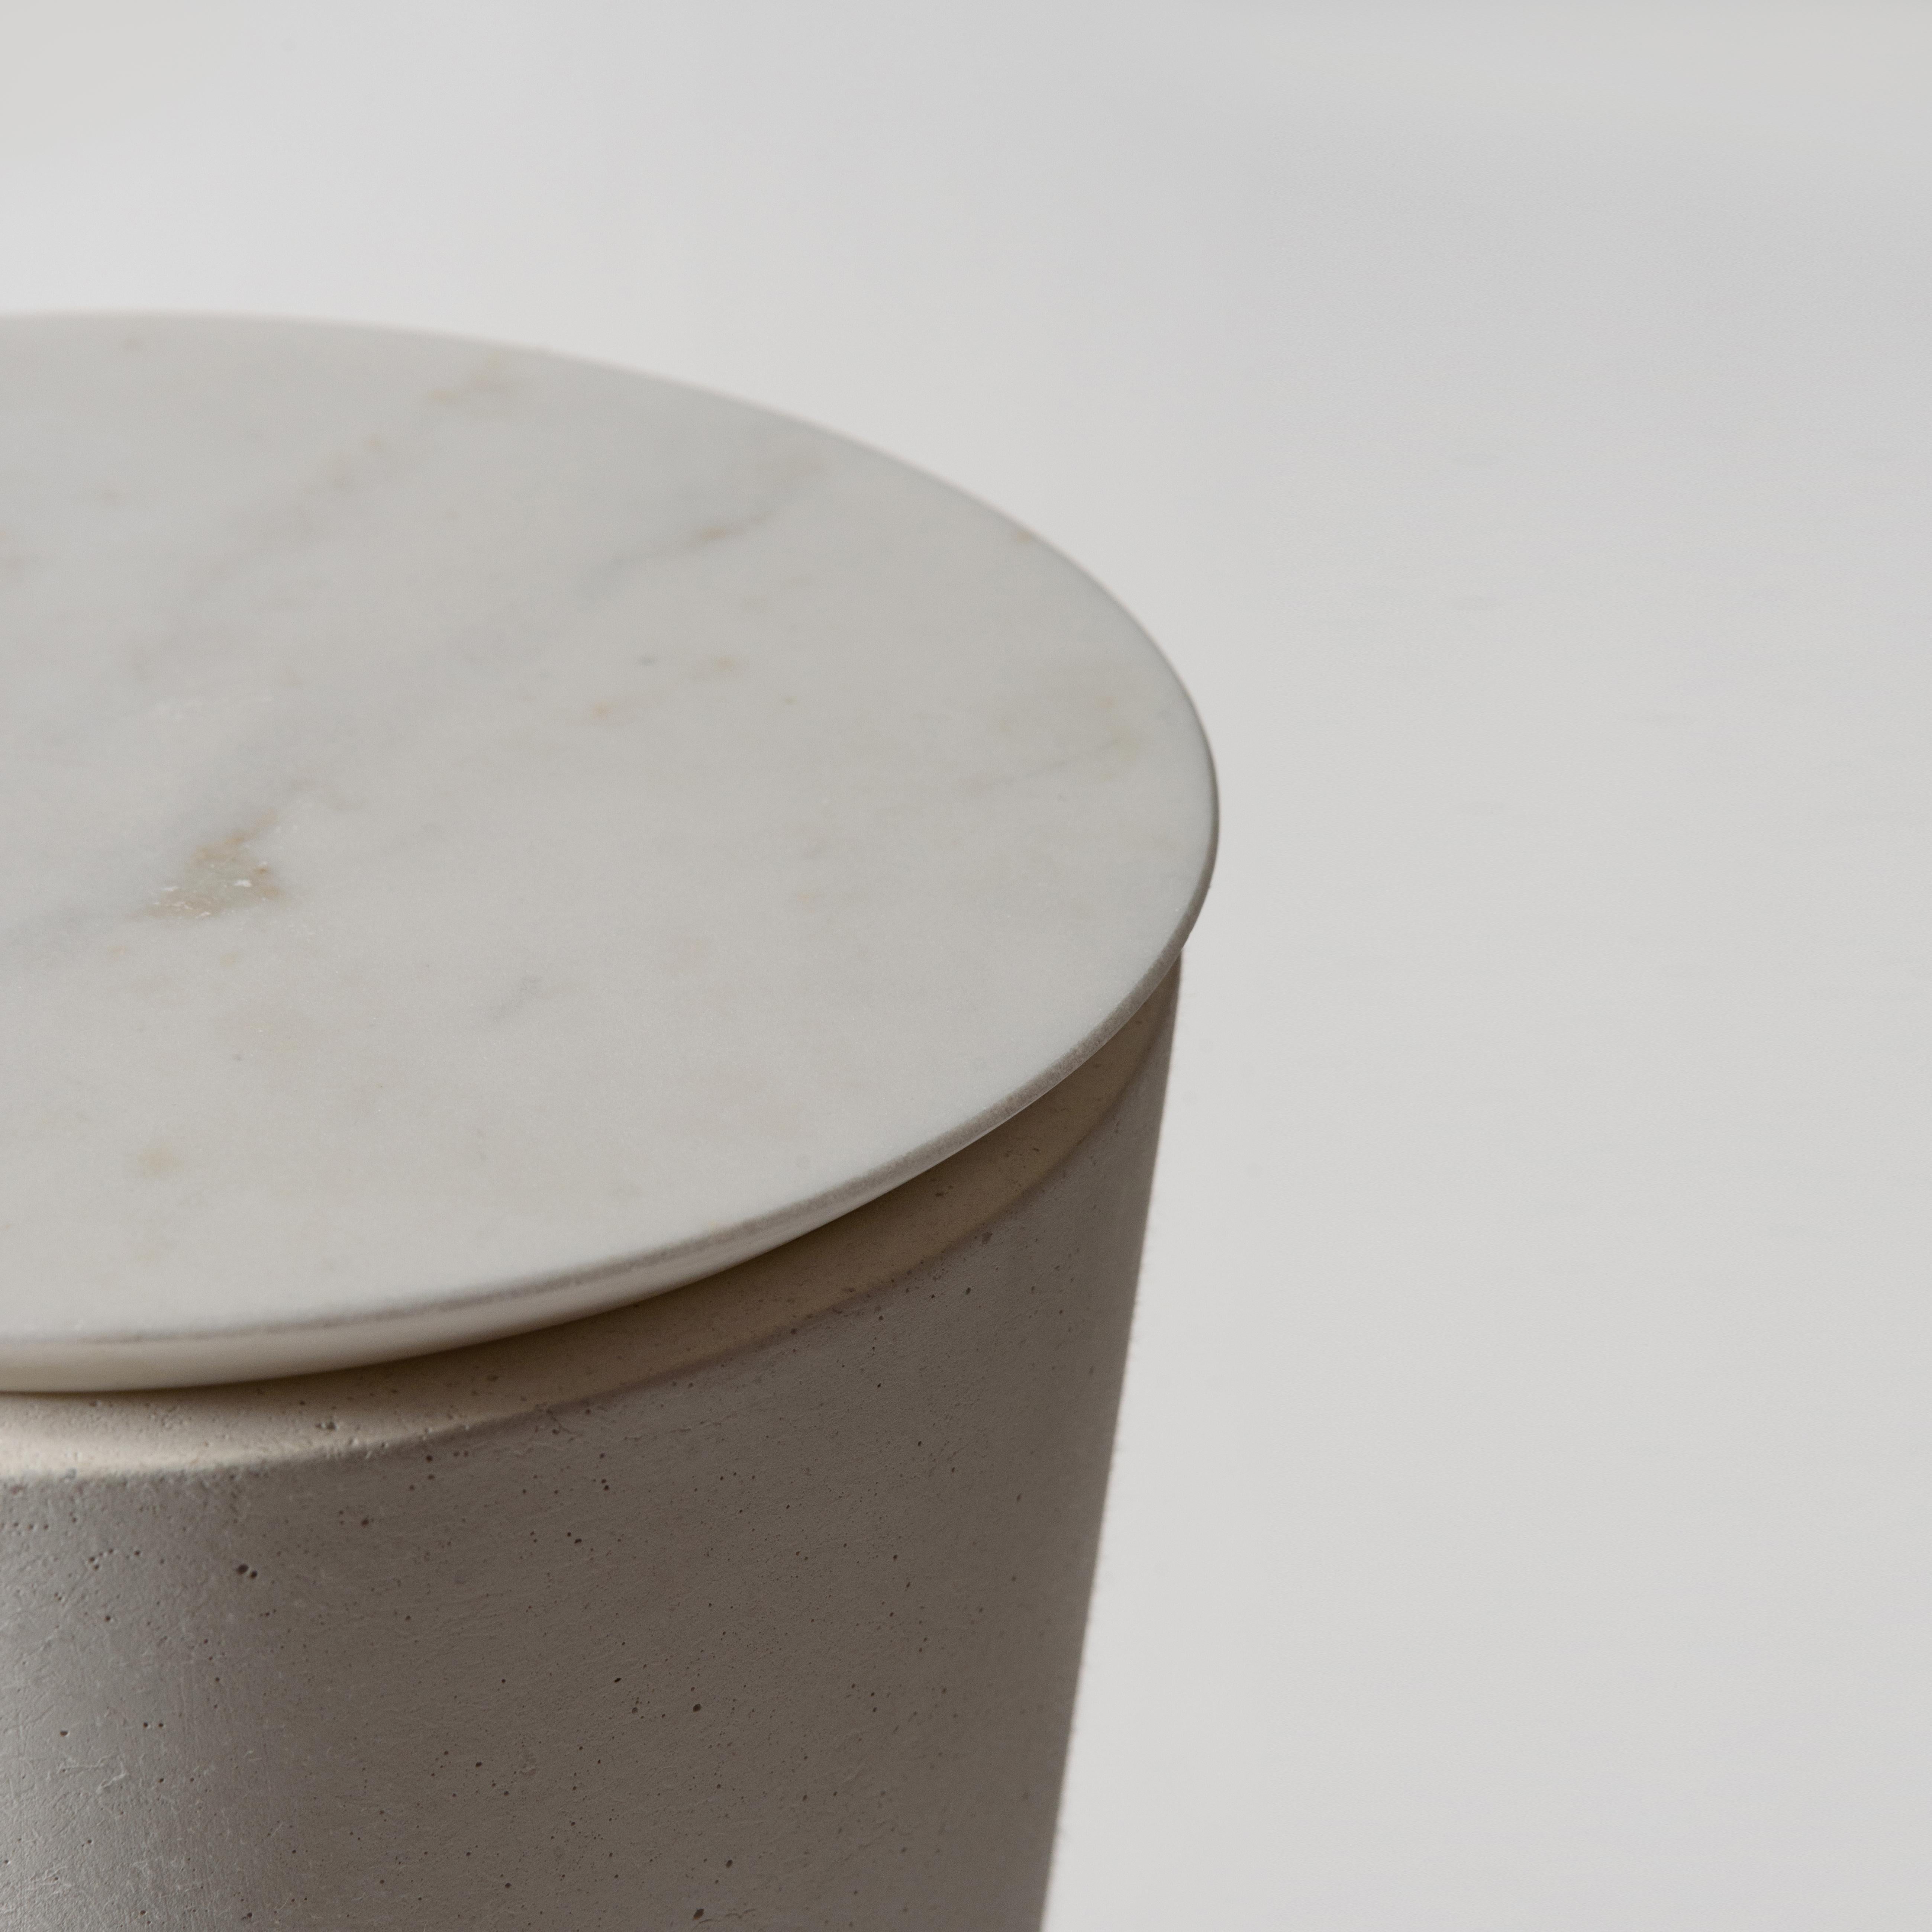 Table 'PLINTH MARBLE' en béton, marbre et pierre, sculpturale européenne du 21ème siècle, faite à la main, en blanc, par ALENTES.

La table d'appoint PLINTH MARBLE est à la fois sculpturale et fonctionnelle. Elle apporte une touche éclectique à tout